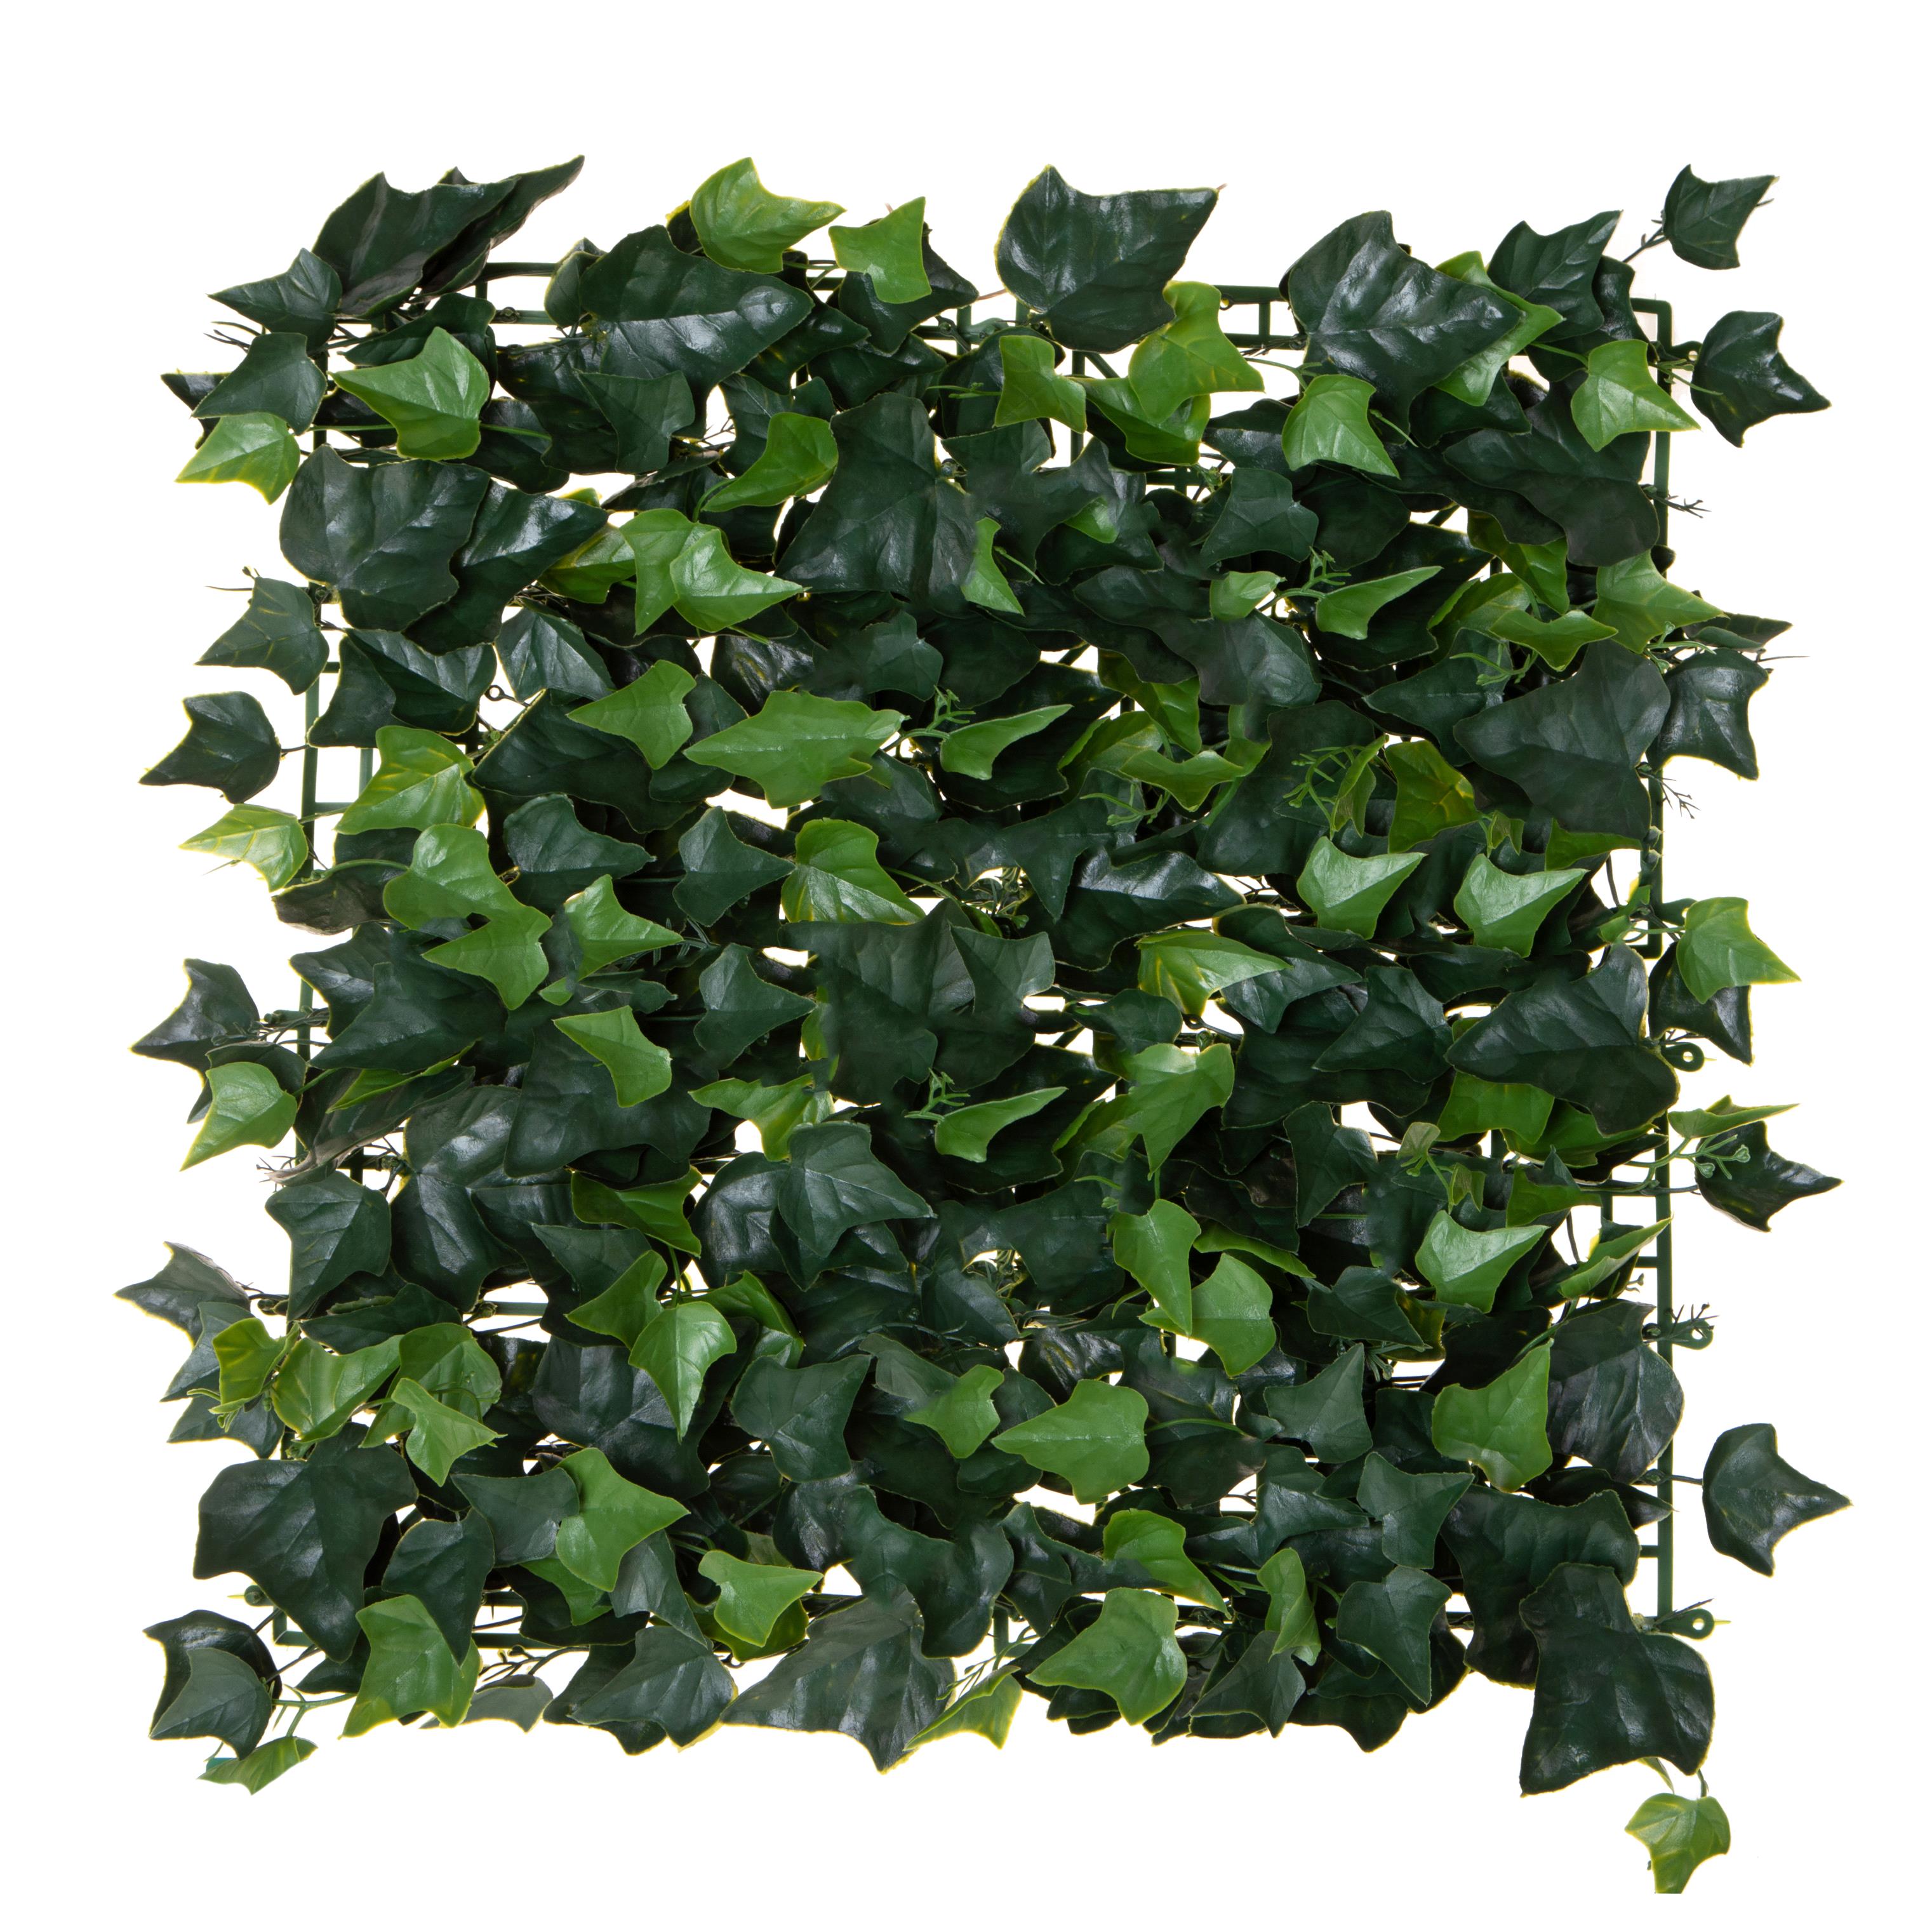 Pflanzen, Rasenfliese, grüne Sphëren, MATTONELLA EDERINA 50X50 CM